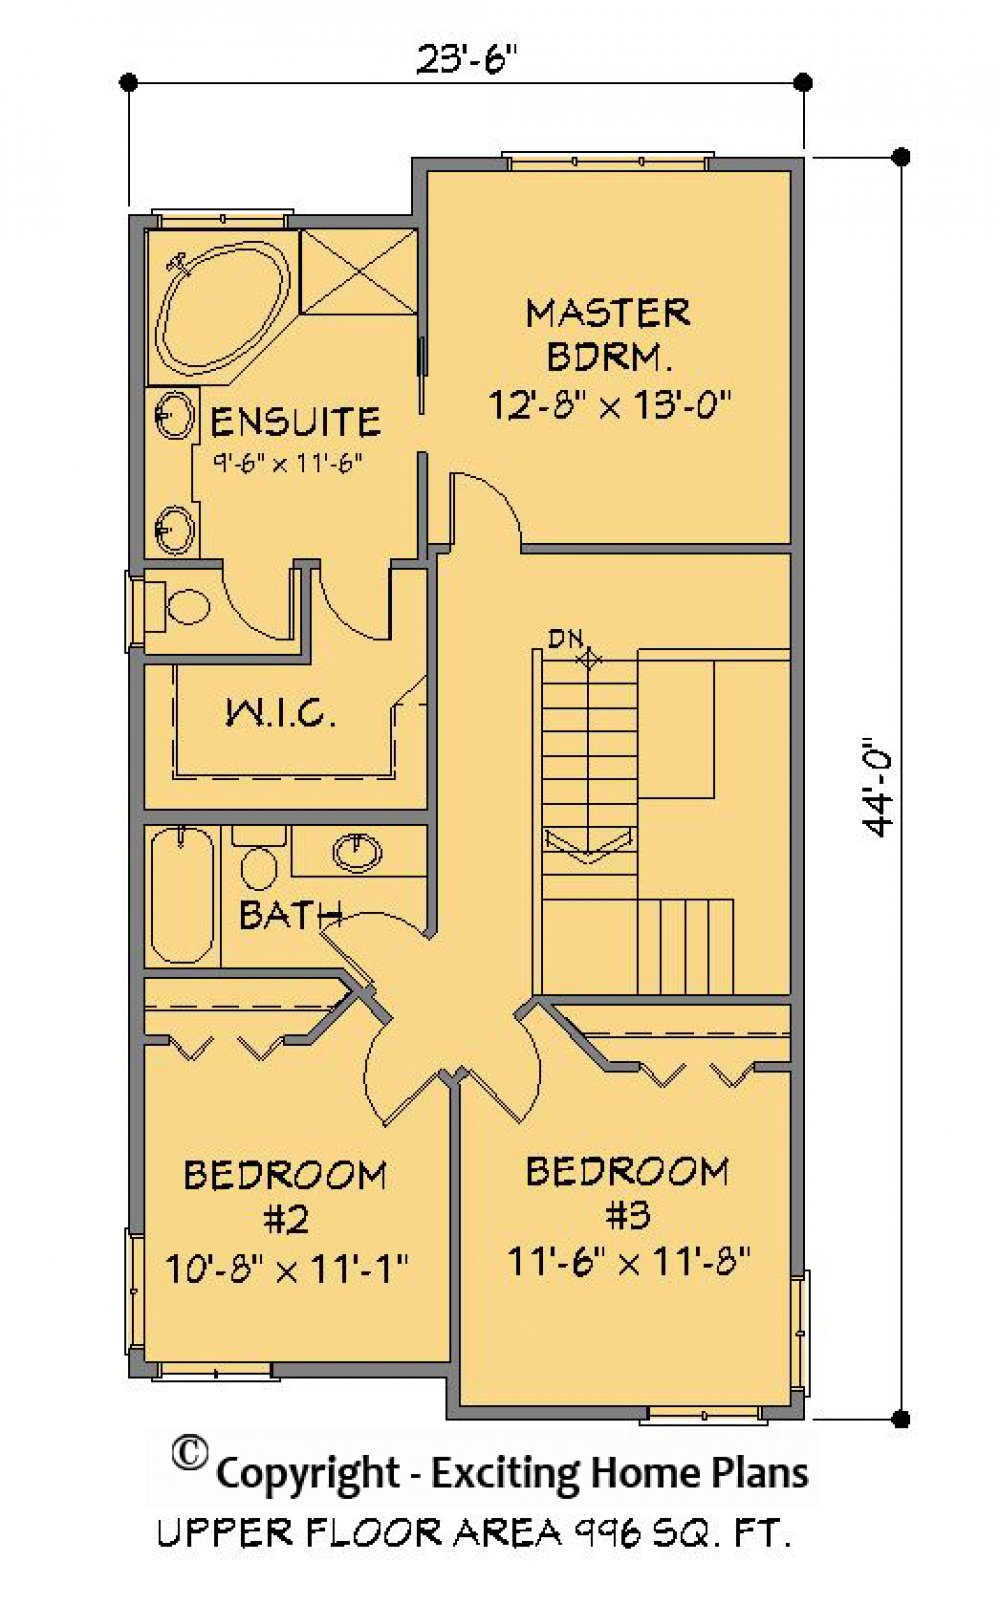 House Plan E1221-10 Upper Floor Plan